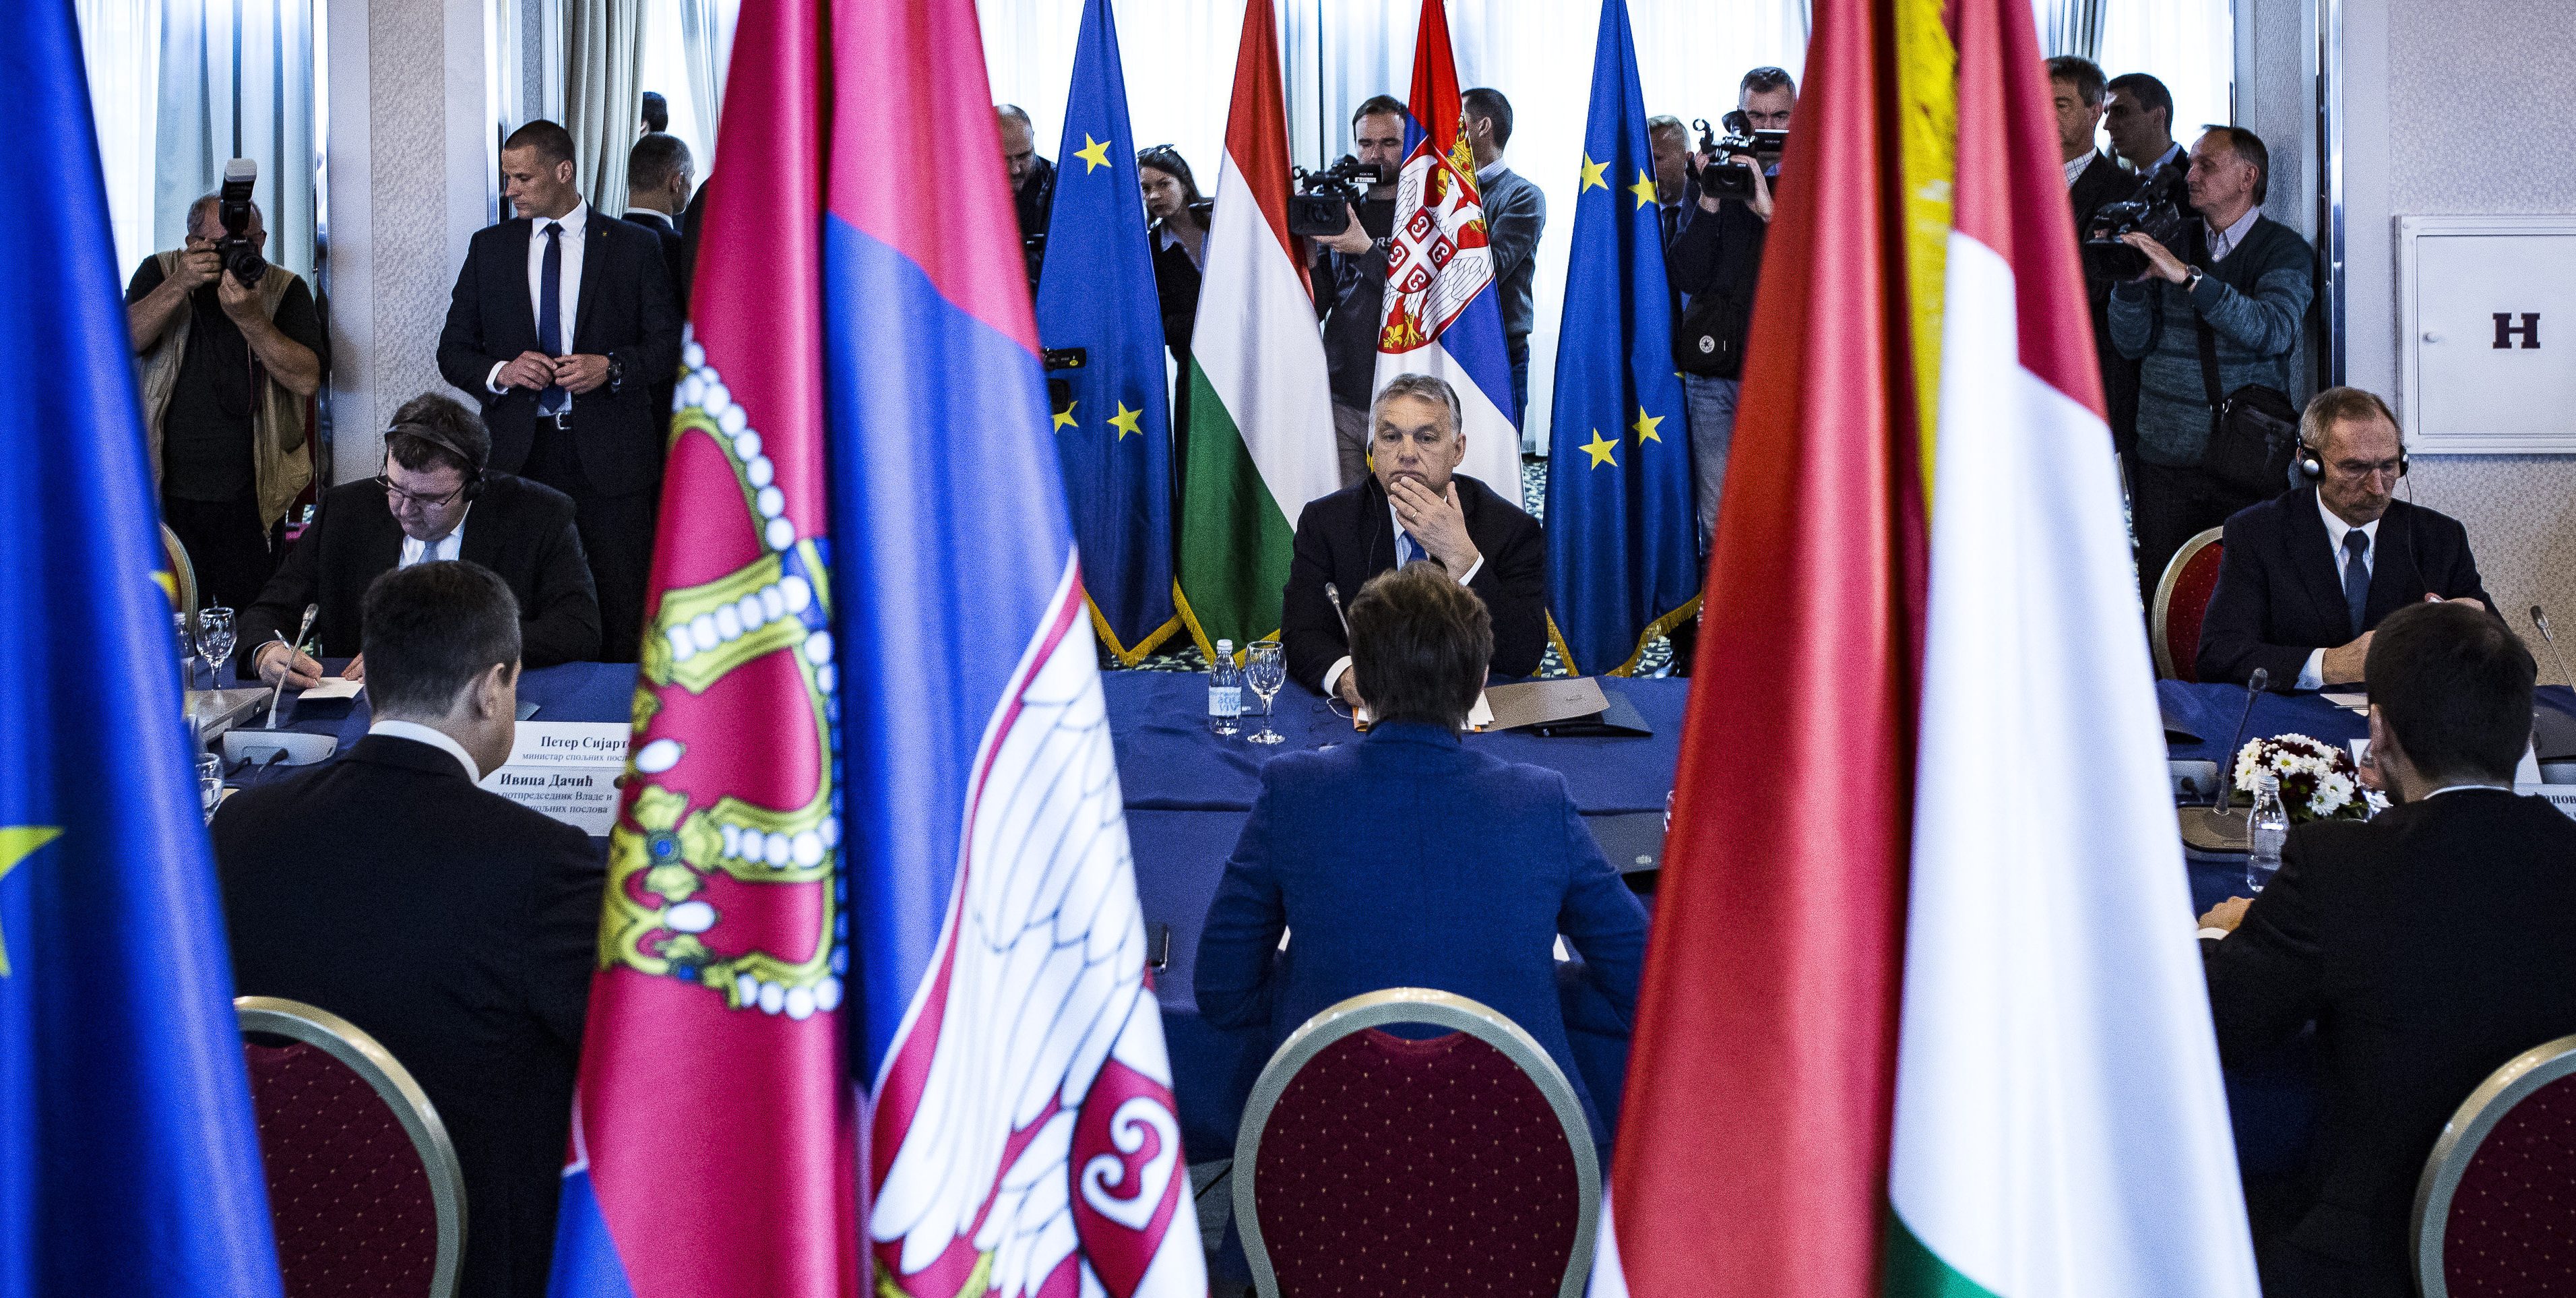 جلسة مشتركة بين الحكومتين الصربية والمجرية المنعقدة في صربيا